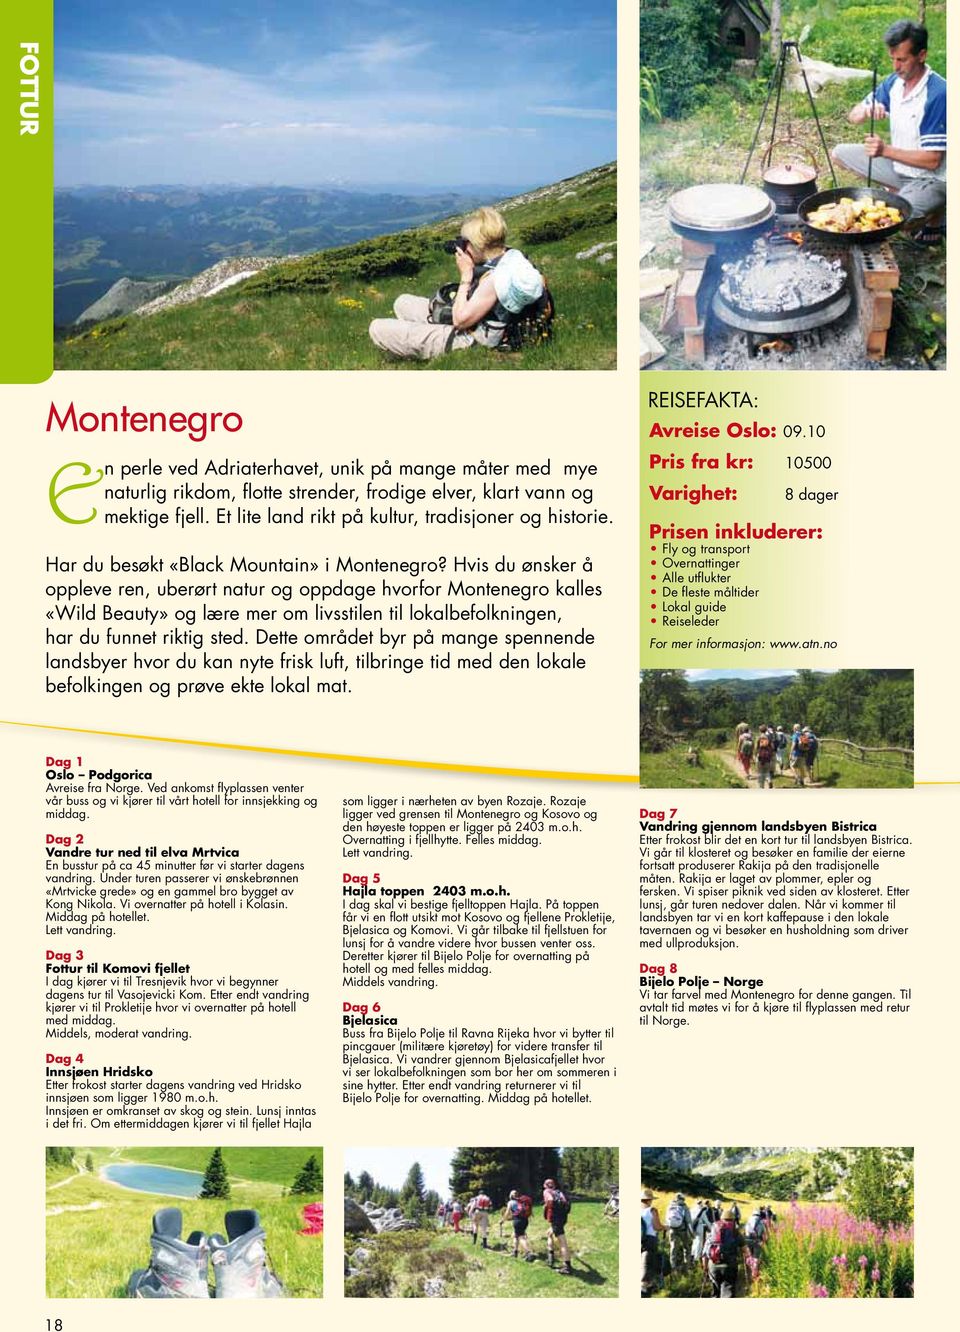 Hvis du ønsker å oppleve ren, uberørt natur og oppdage hvorfor Montenegro kalles «Wild Beauty» og lære mer om livsstilen til lokalbefolkningen, har du funnet riktig sted.